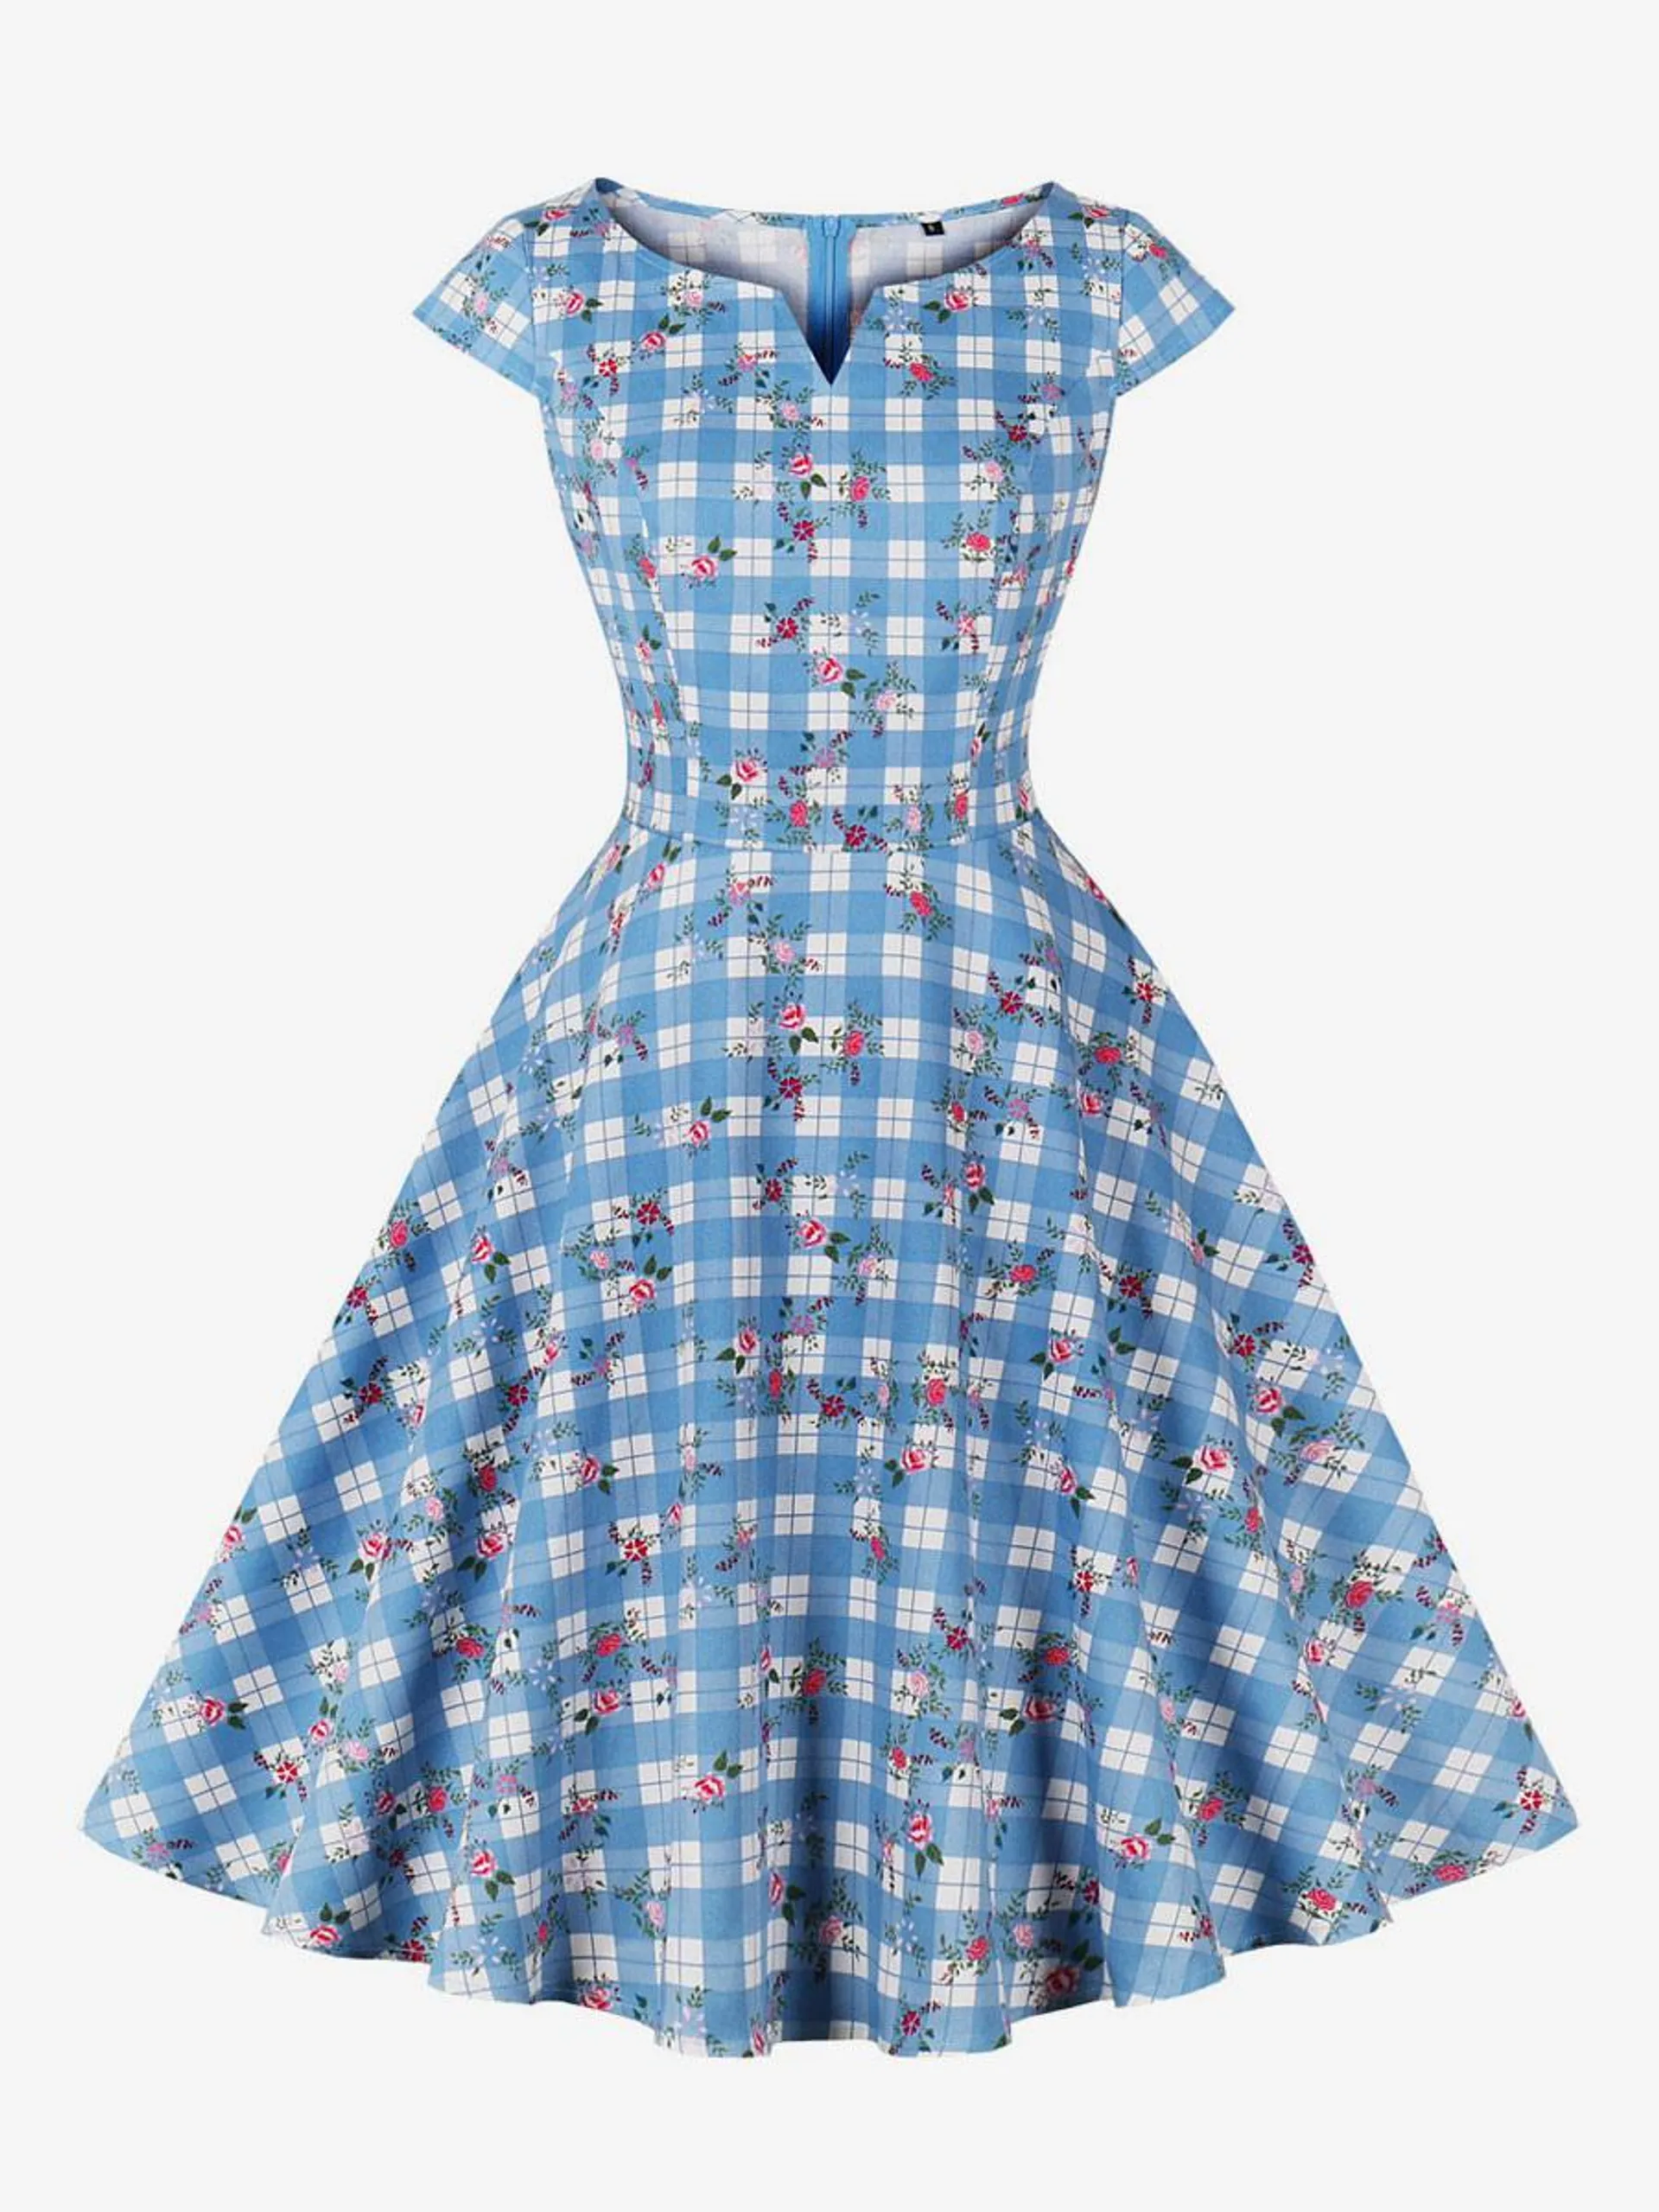 Vintage Dress V-Neck 1950s Audrey Hepburn Style Short Sleeves Floral Print Knee Length Light Sky Blue Swing Dress